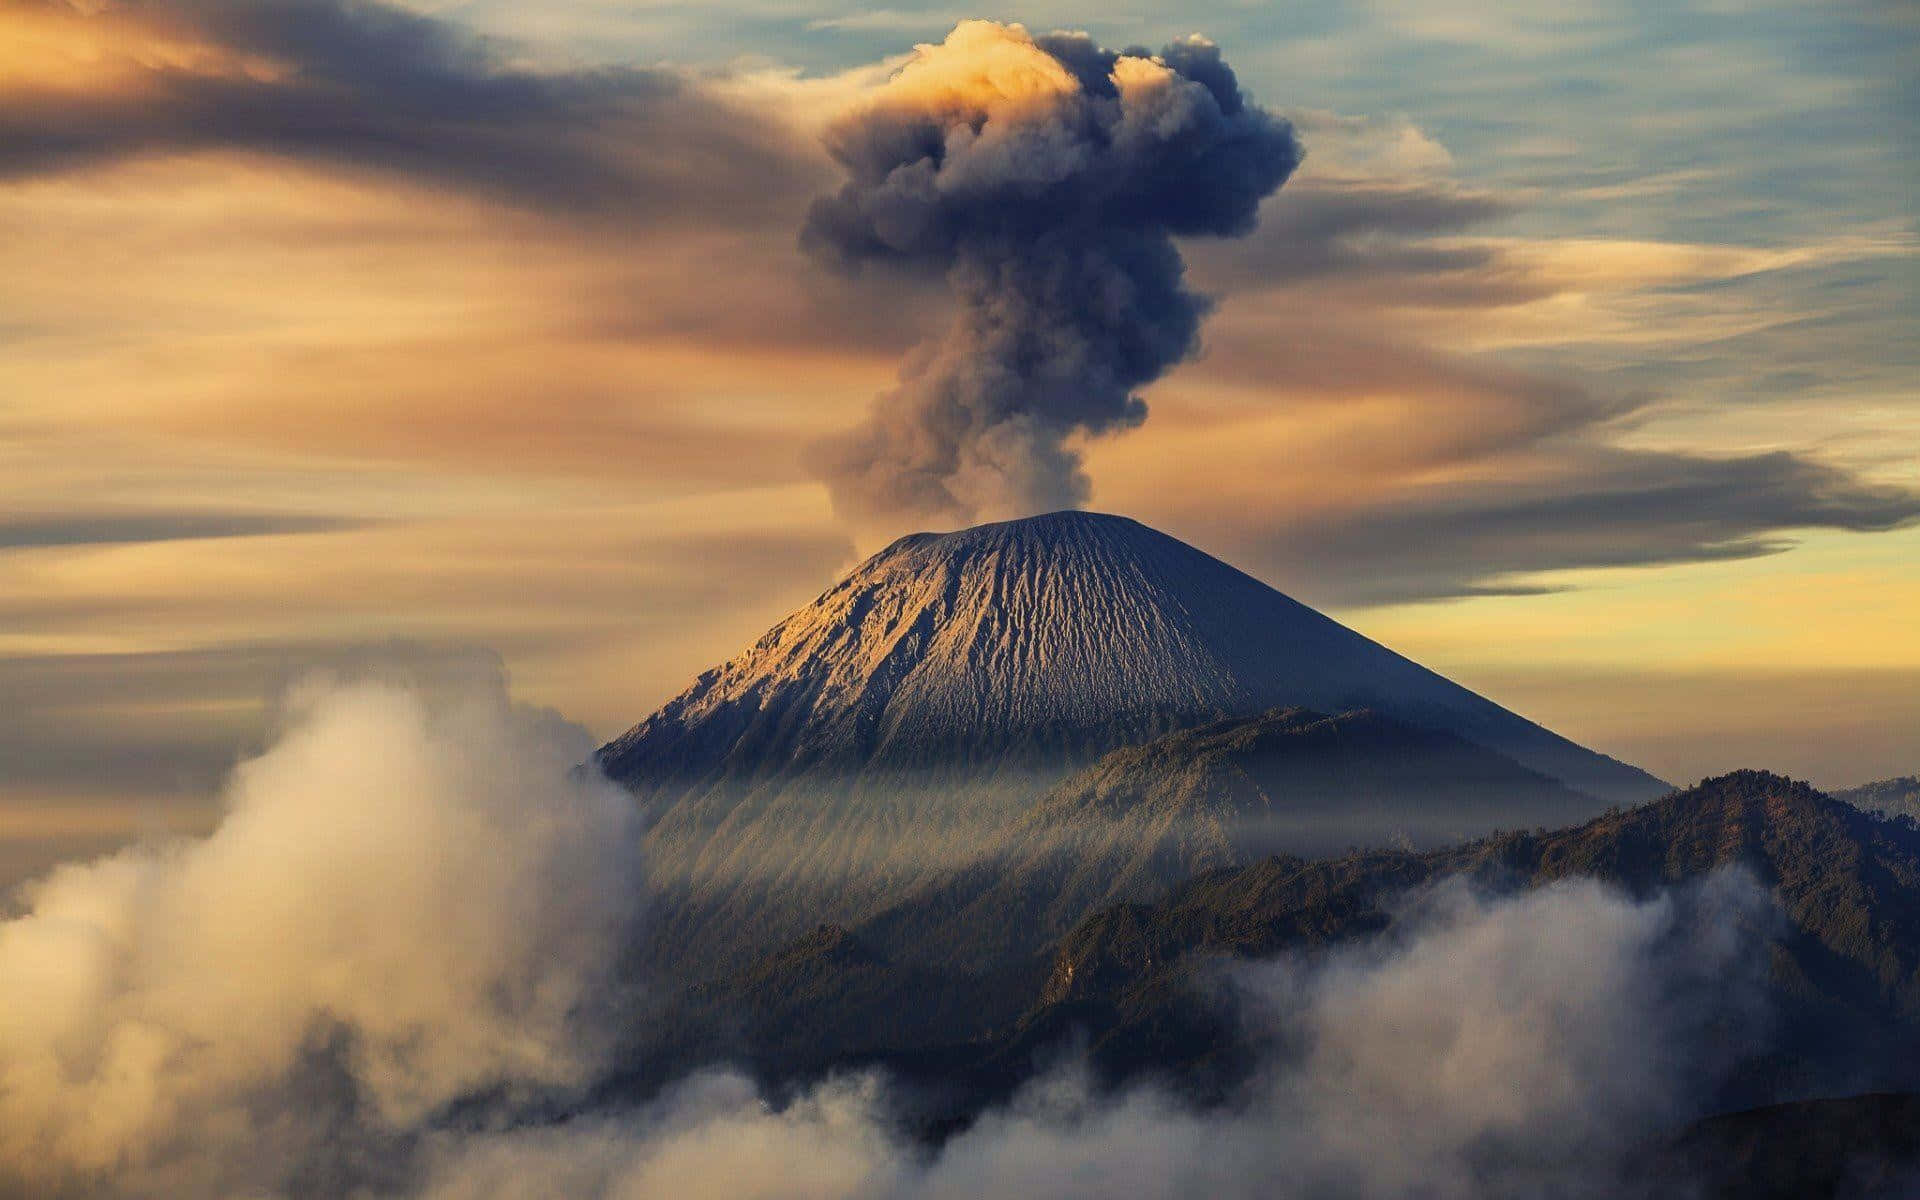 Majestic Semeru Volcano Erupting In Indonesia